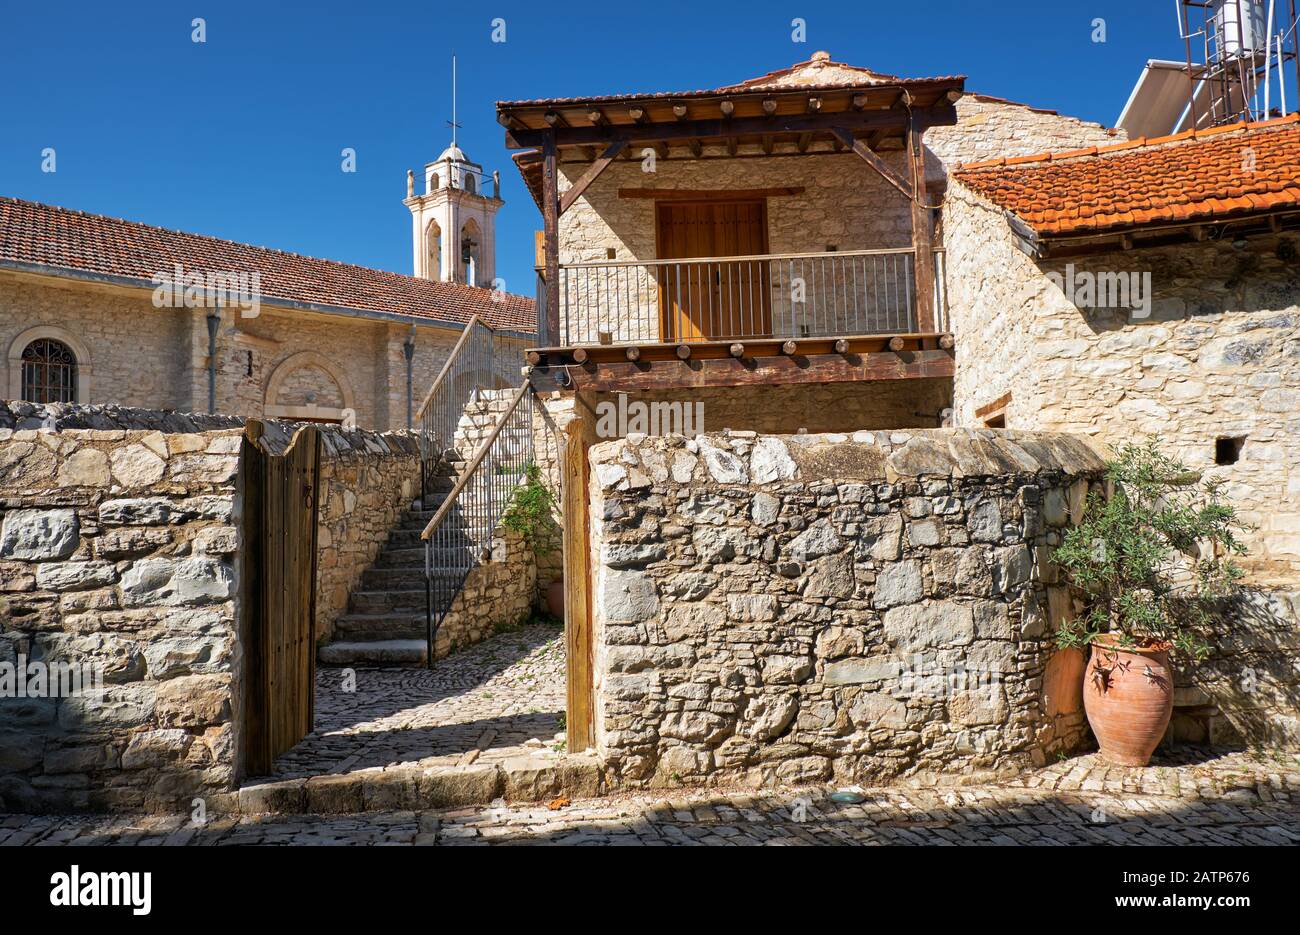 La vista de la antigua casa de campo tradicional con la iglesia de la Virgen María Valas (Valana) en el fondo. Pueblo lania. Limassol. Chipre Foto de stock